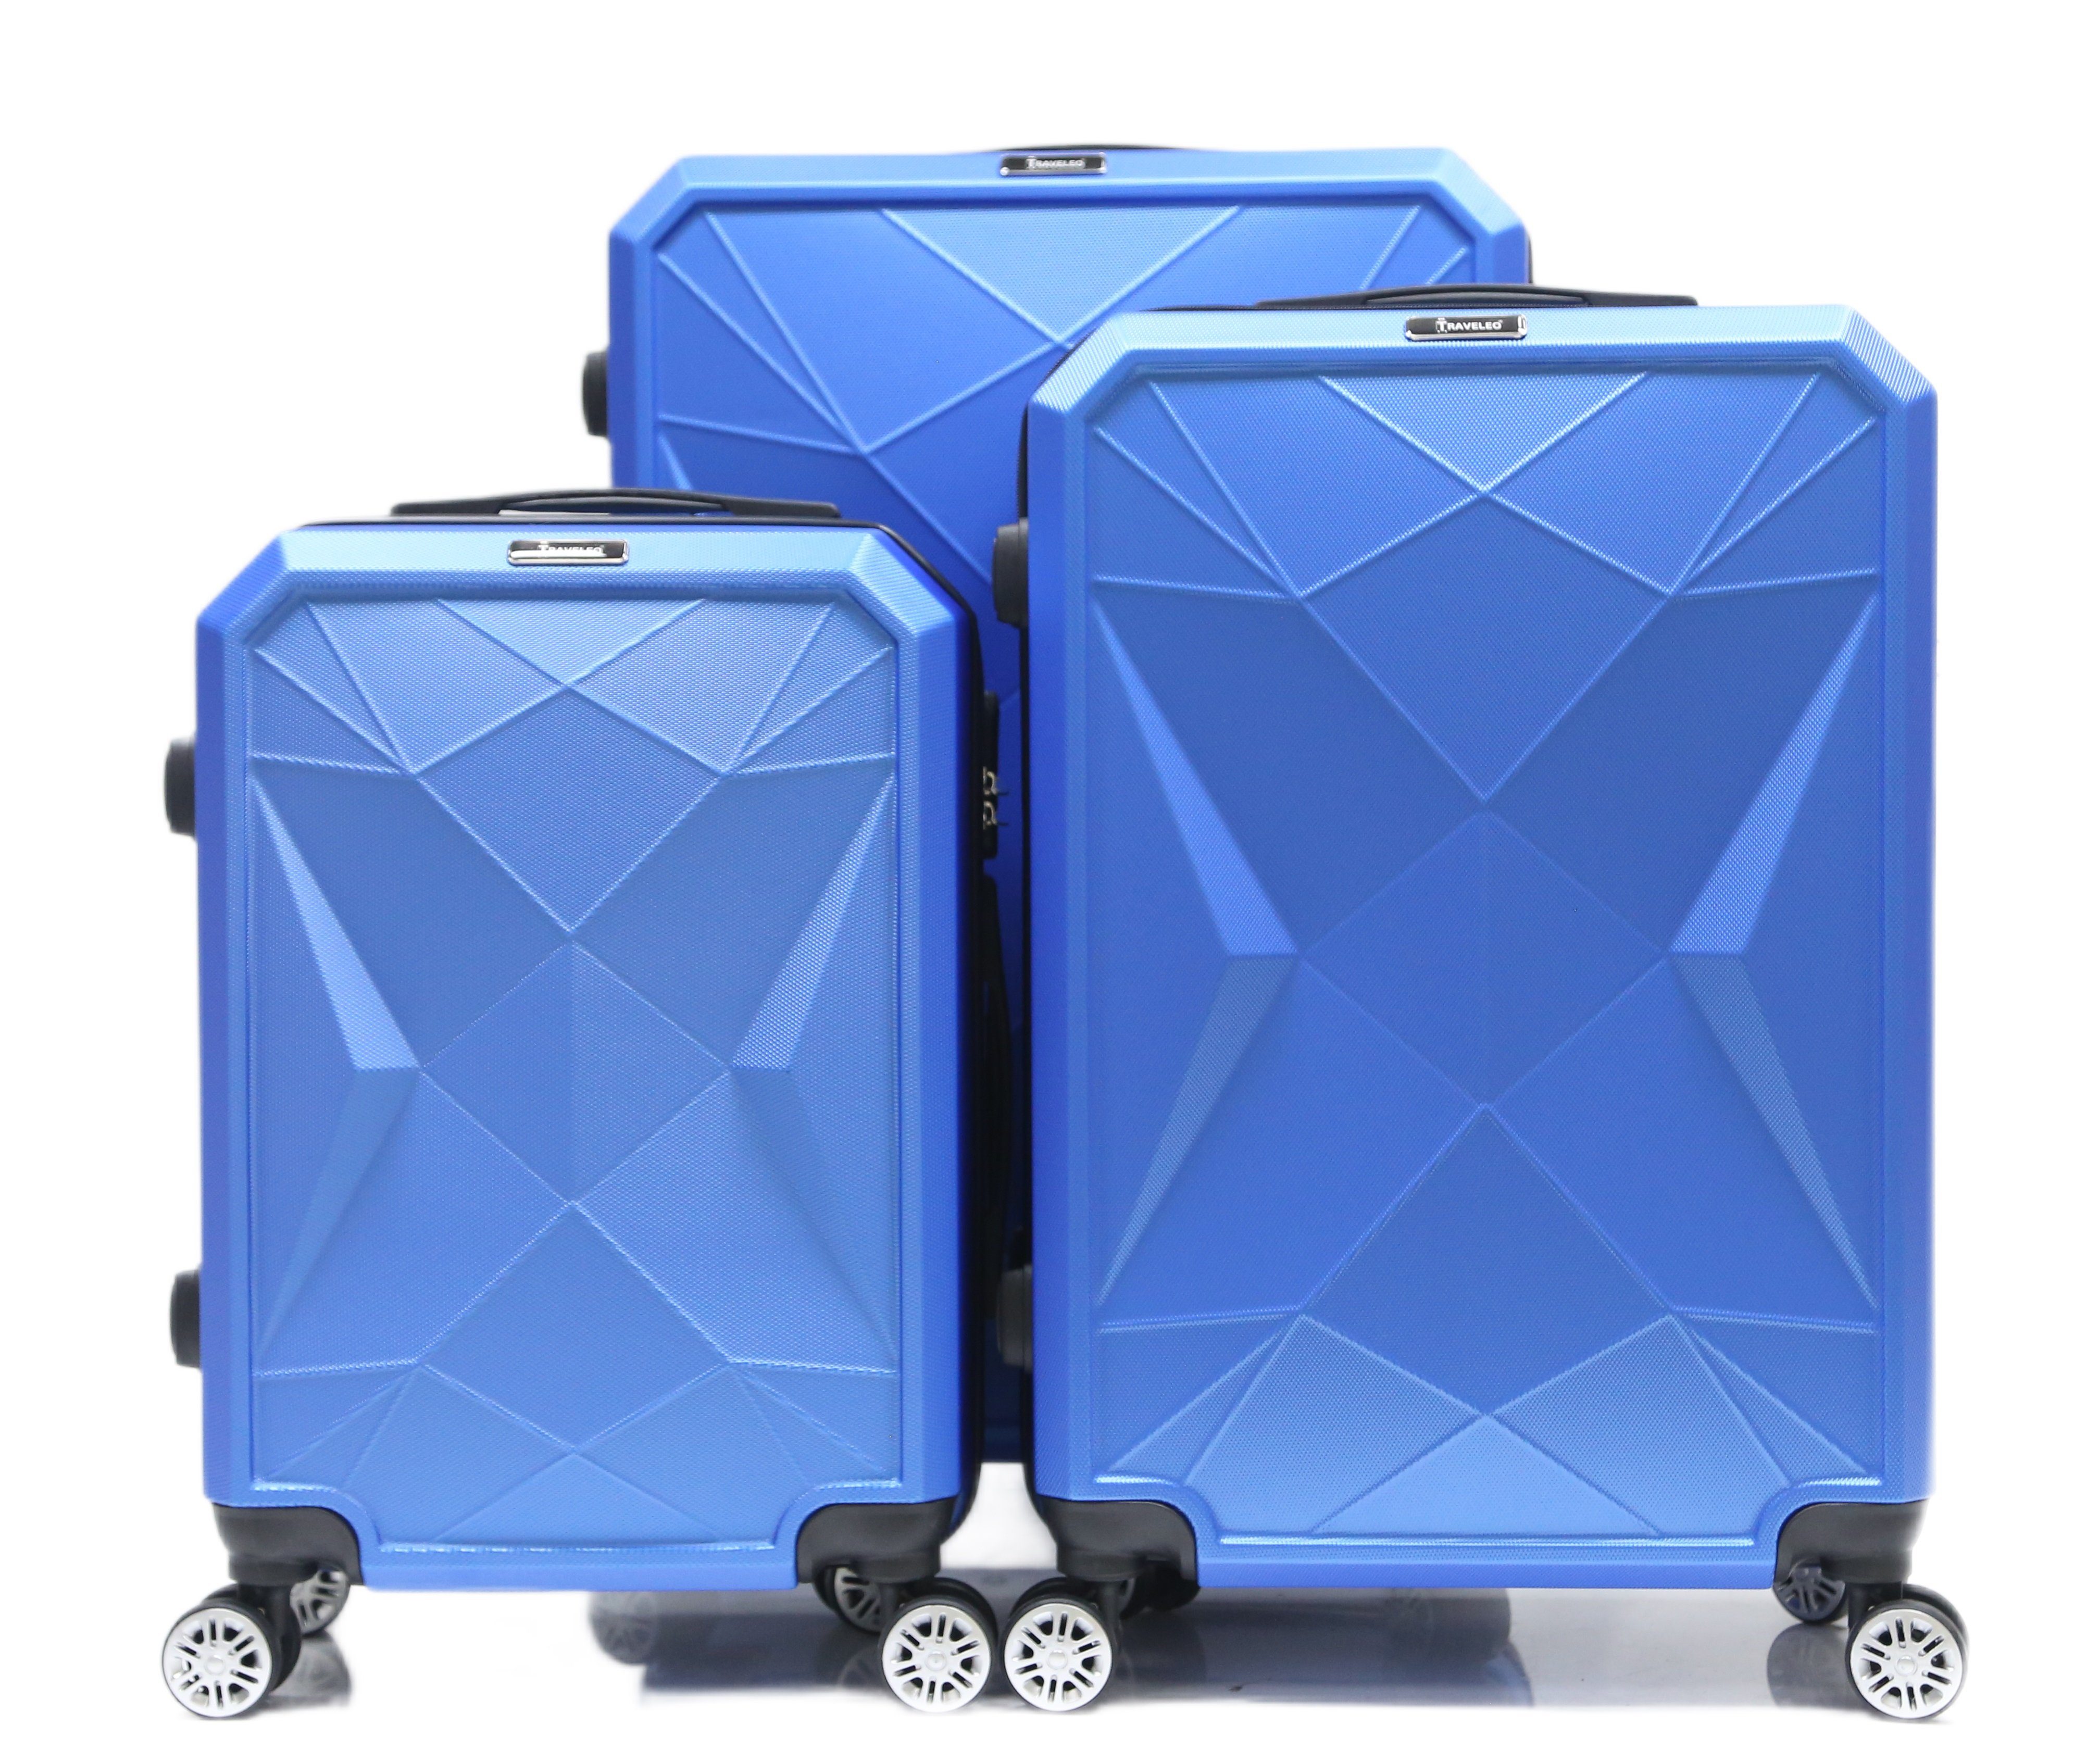 Blau Gepäck Kofferset Hartschale Reisekoffer Koffer tlg 3 Reisetasche Handgepäck Cheffinger